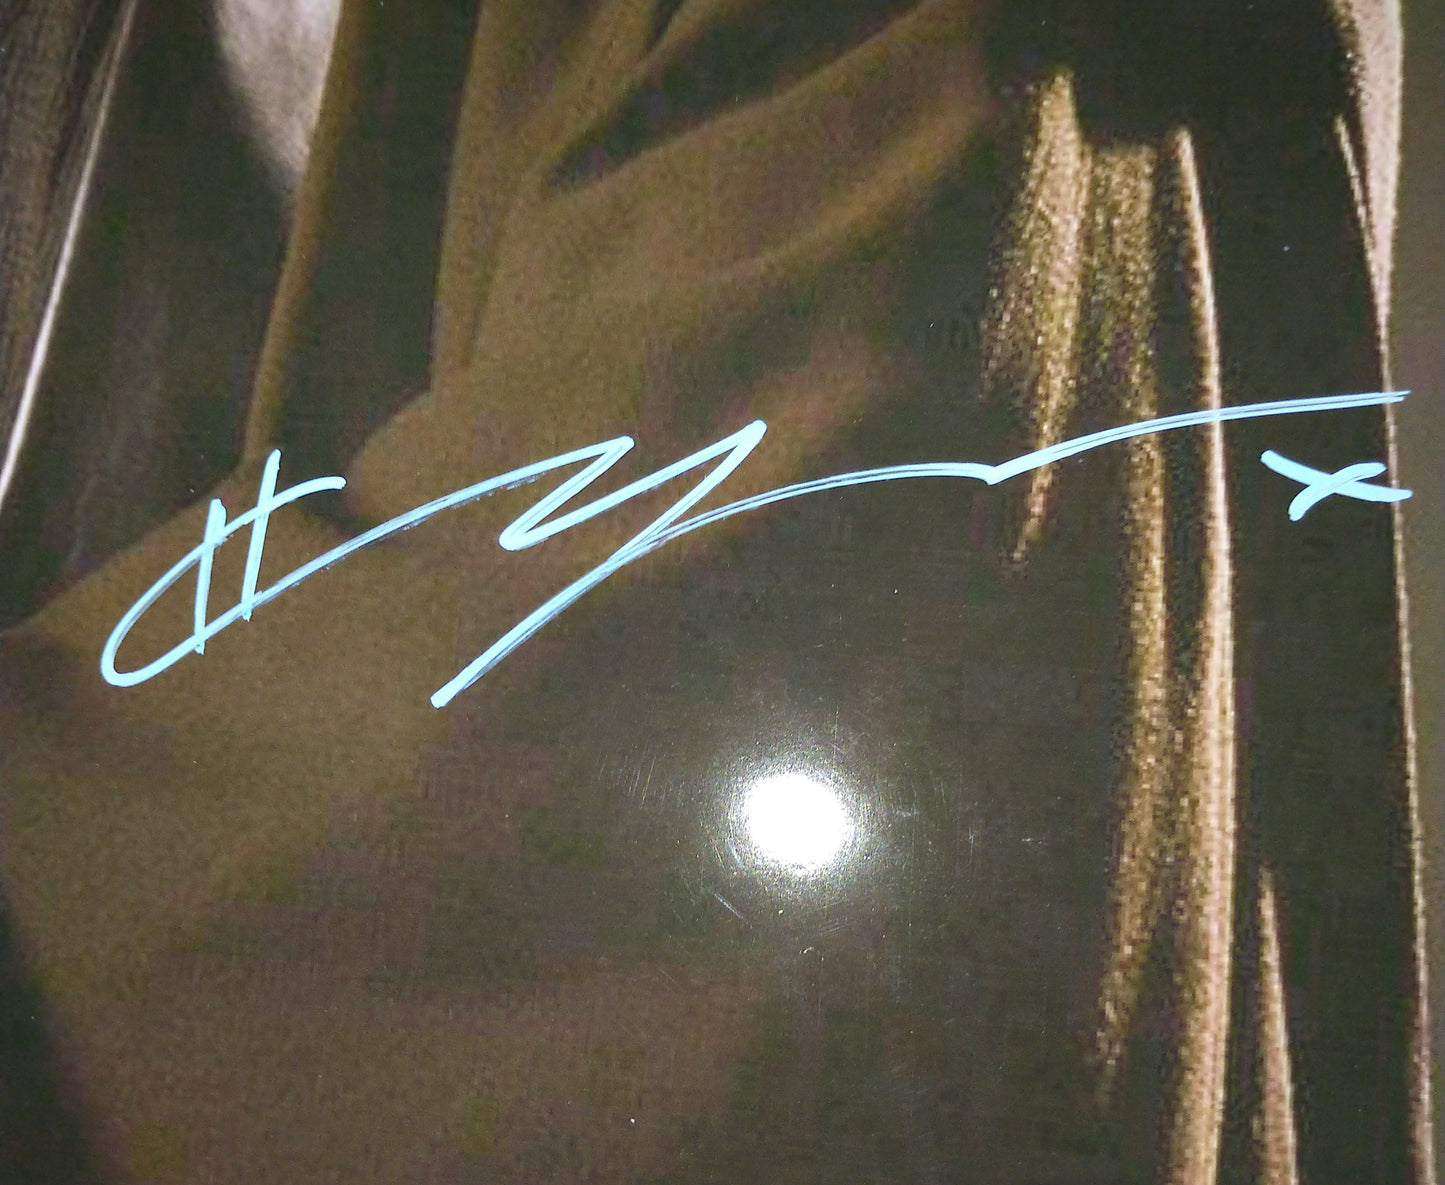 Hayden Christensen Hand Signed Autograph 11x14 Photo JSA